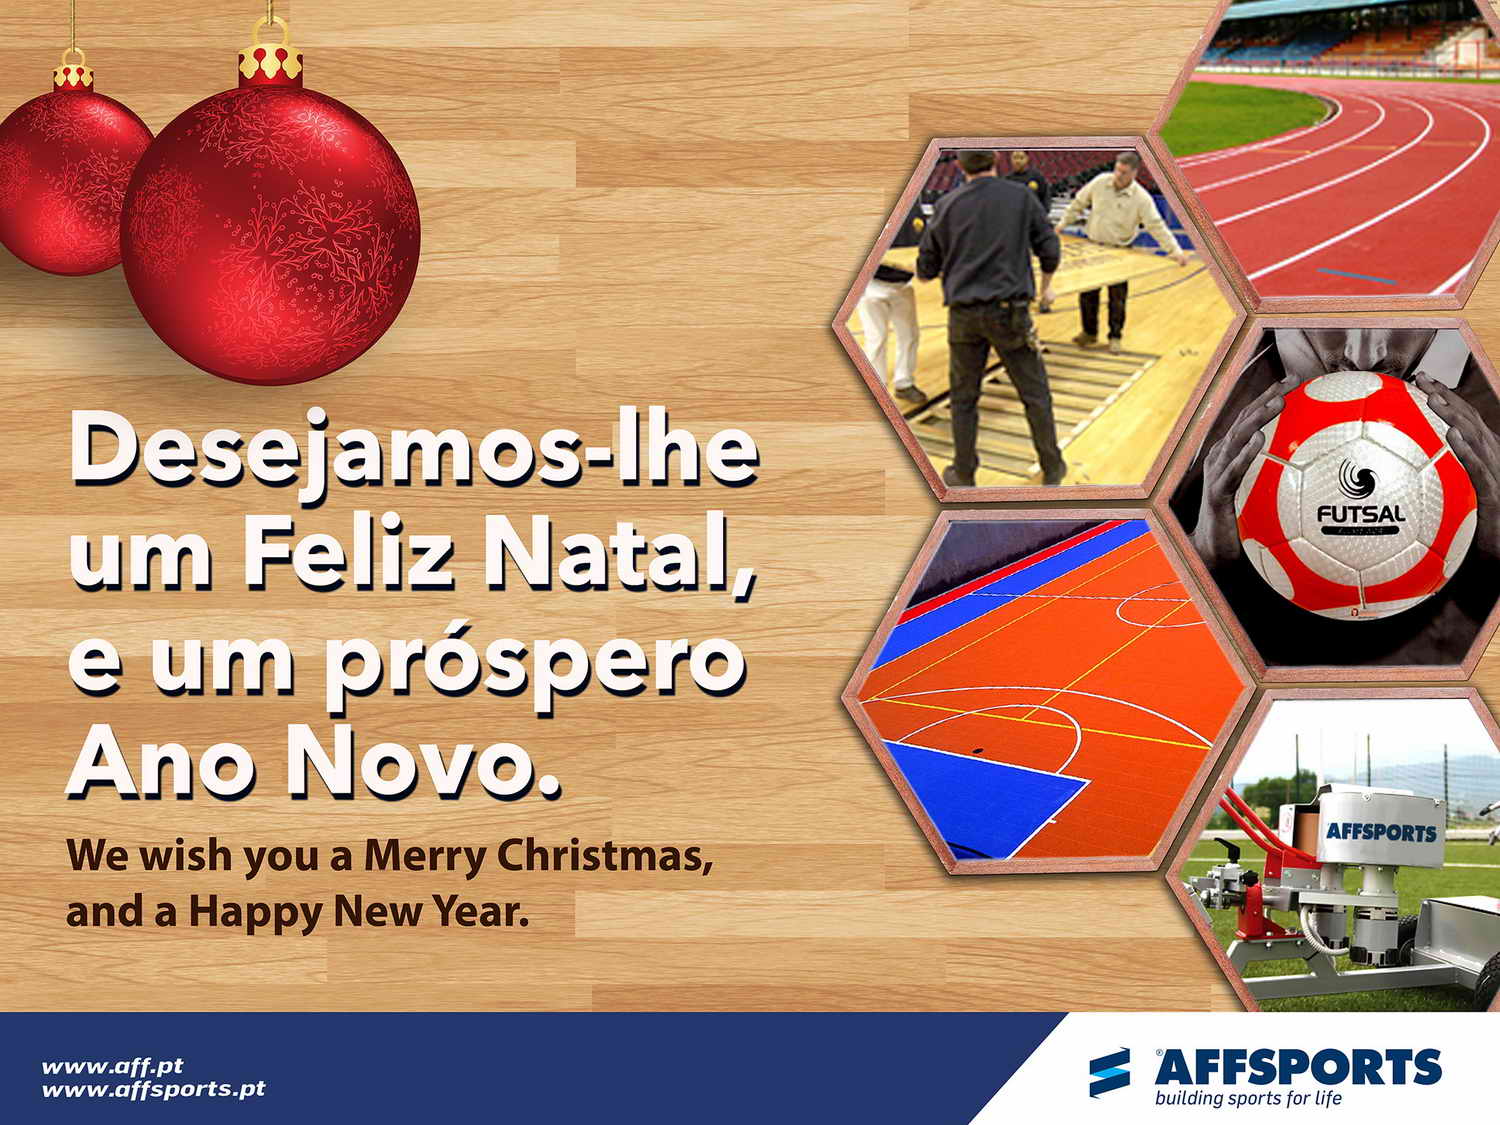 Desejamos-lhe um Feliz Natal e um próspero Ano Novo - AFFSPORTS